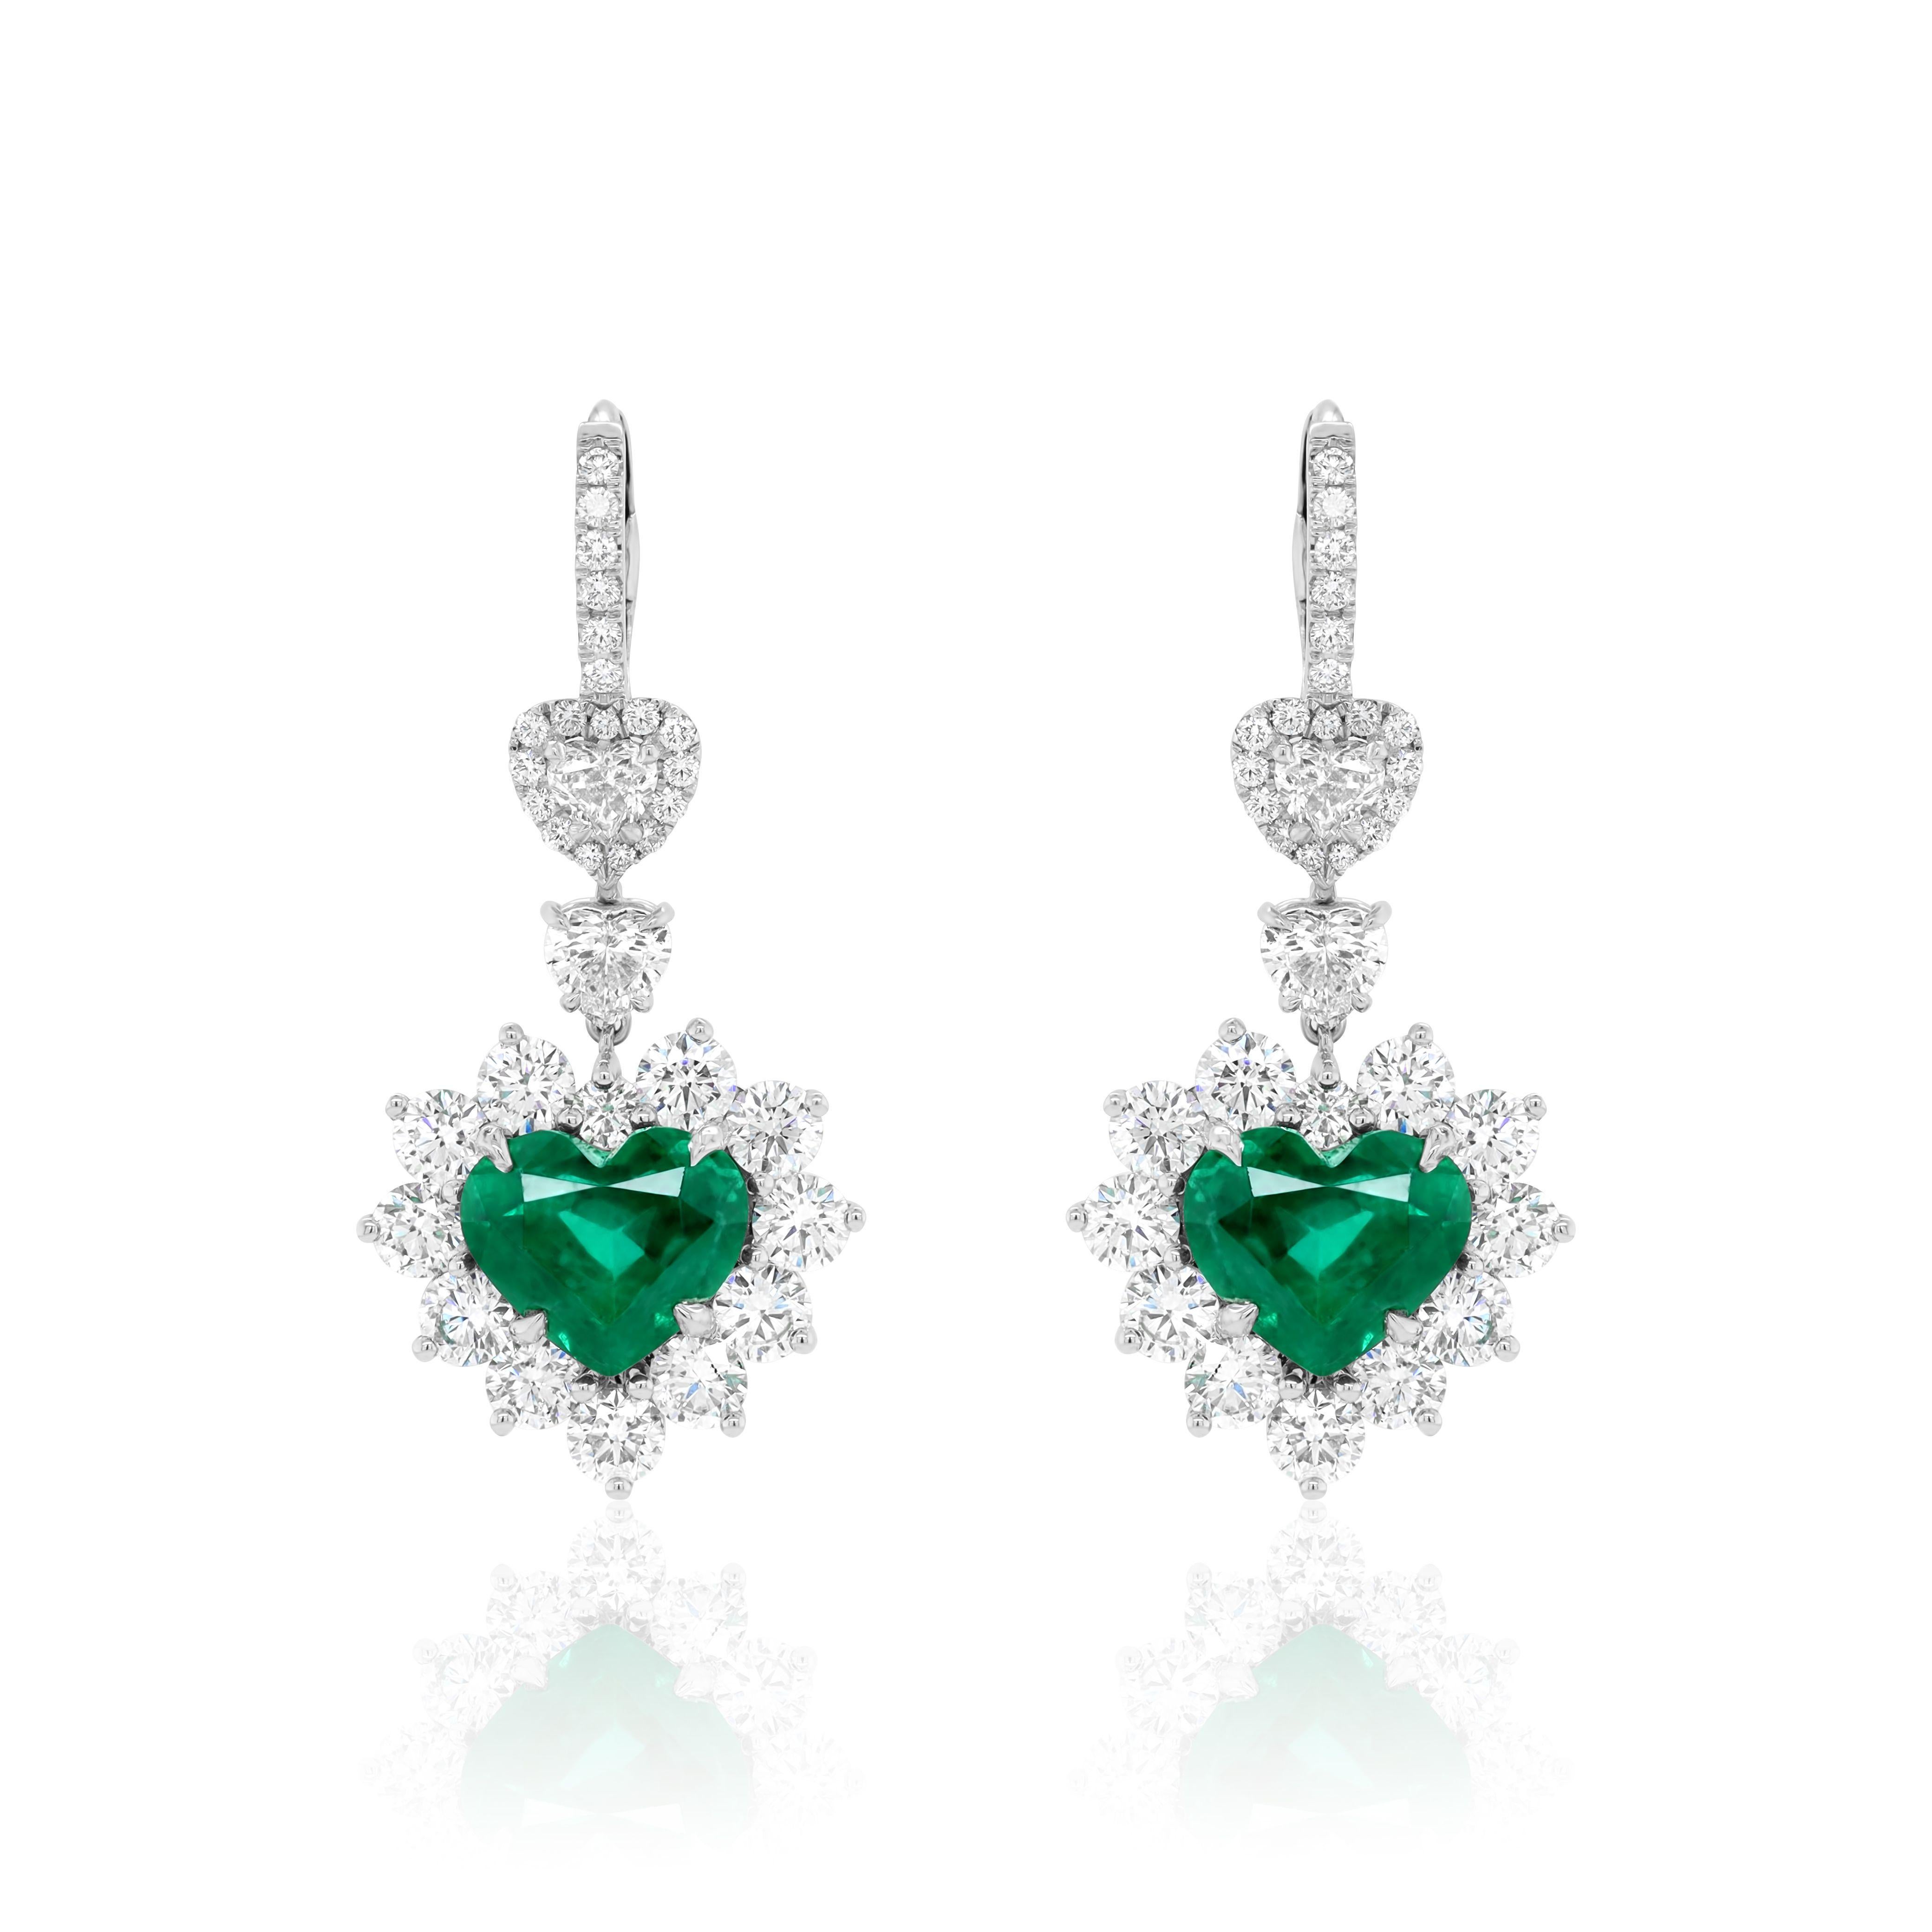 Heart Cut Diana M. Certified 8.16 Carat Heart Shaped Emerald Earrings For Sale